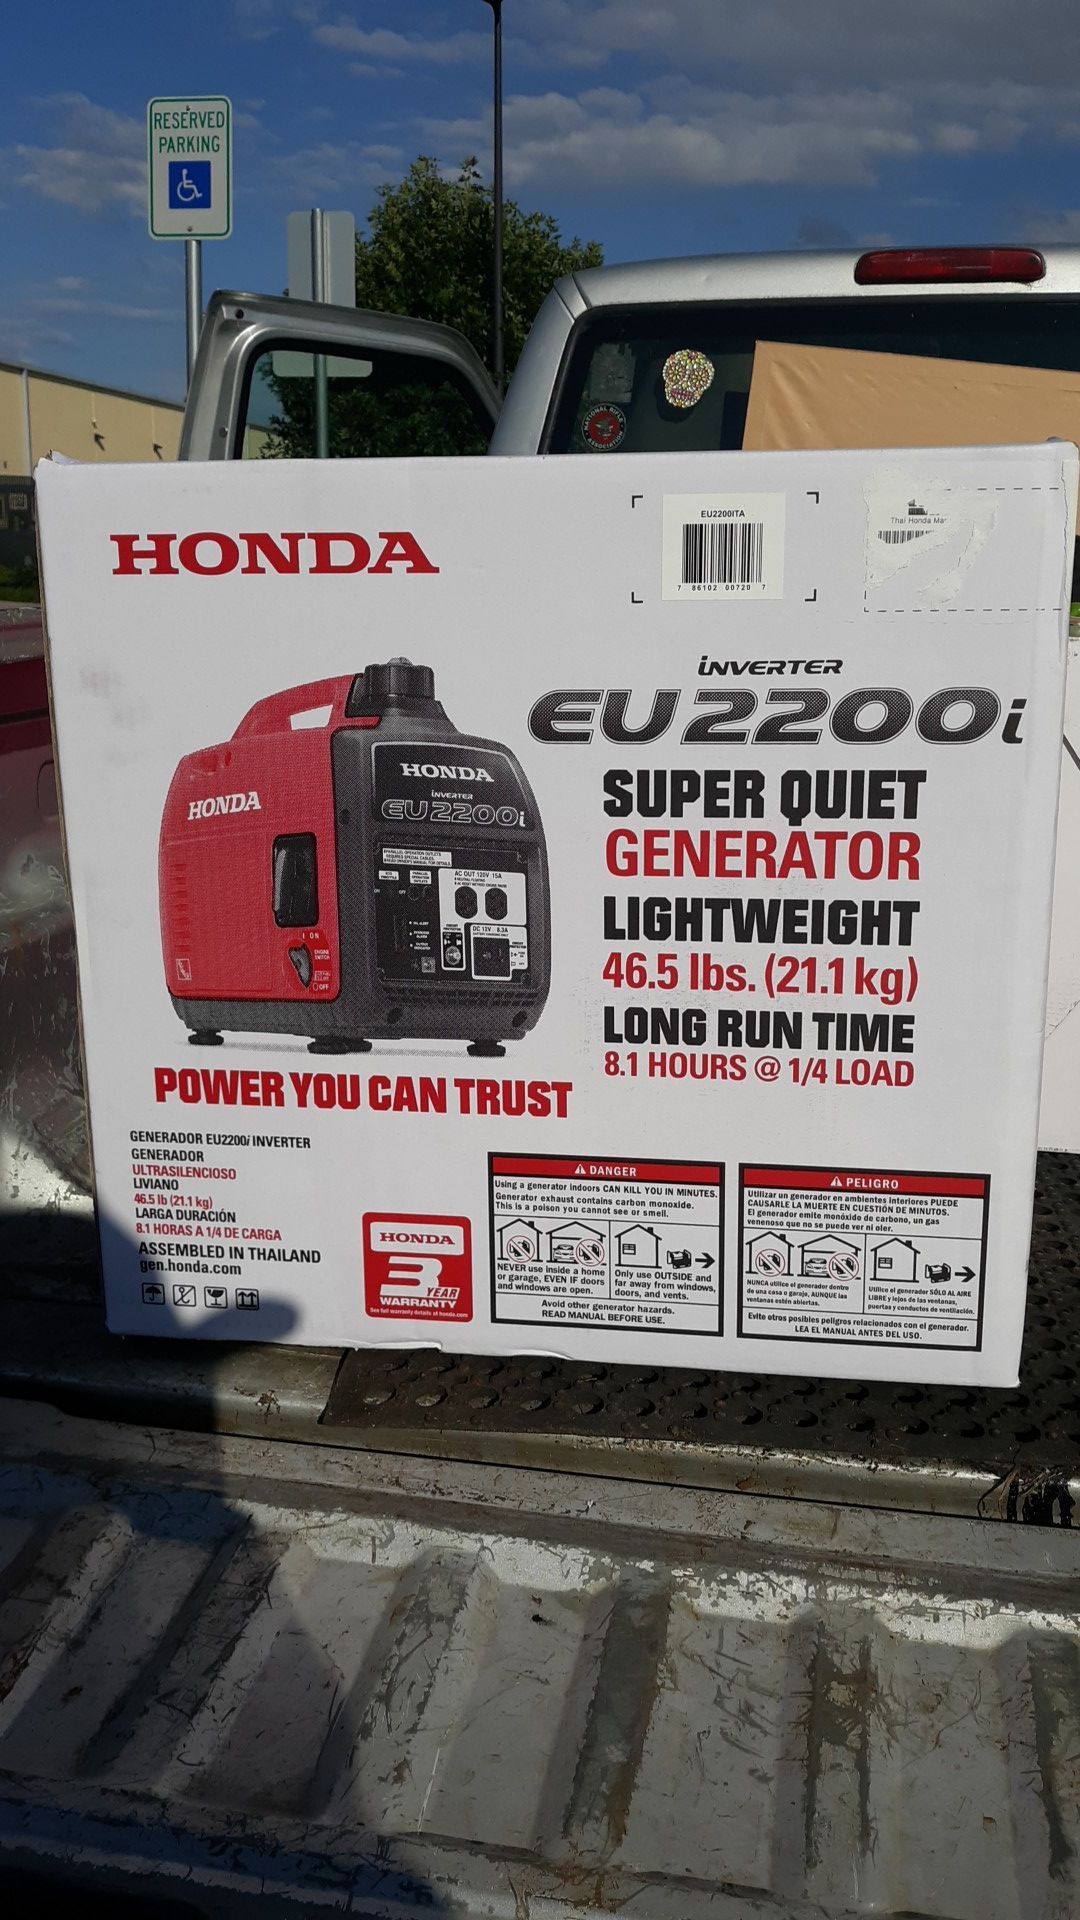 Honda Generator EU2200